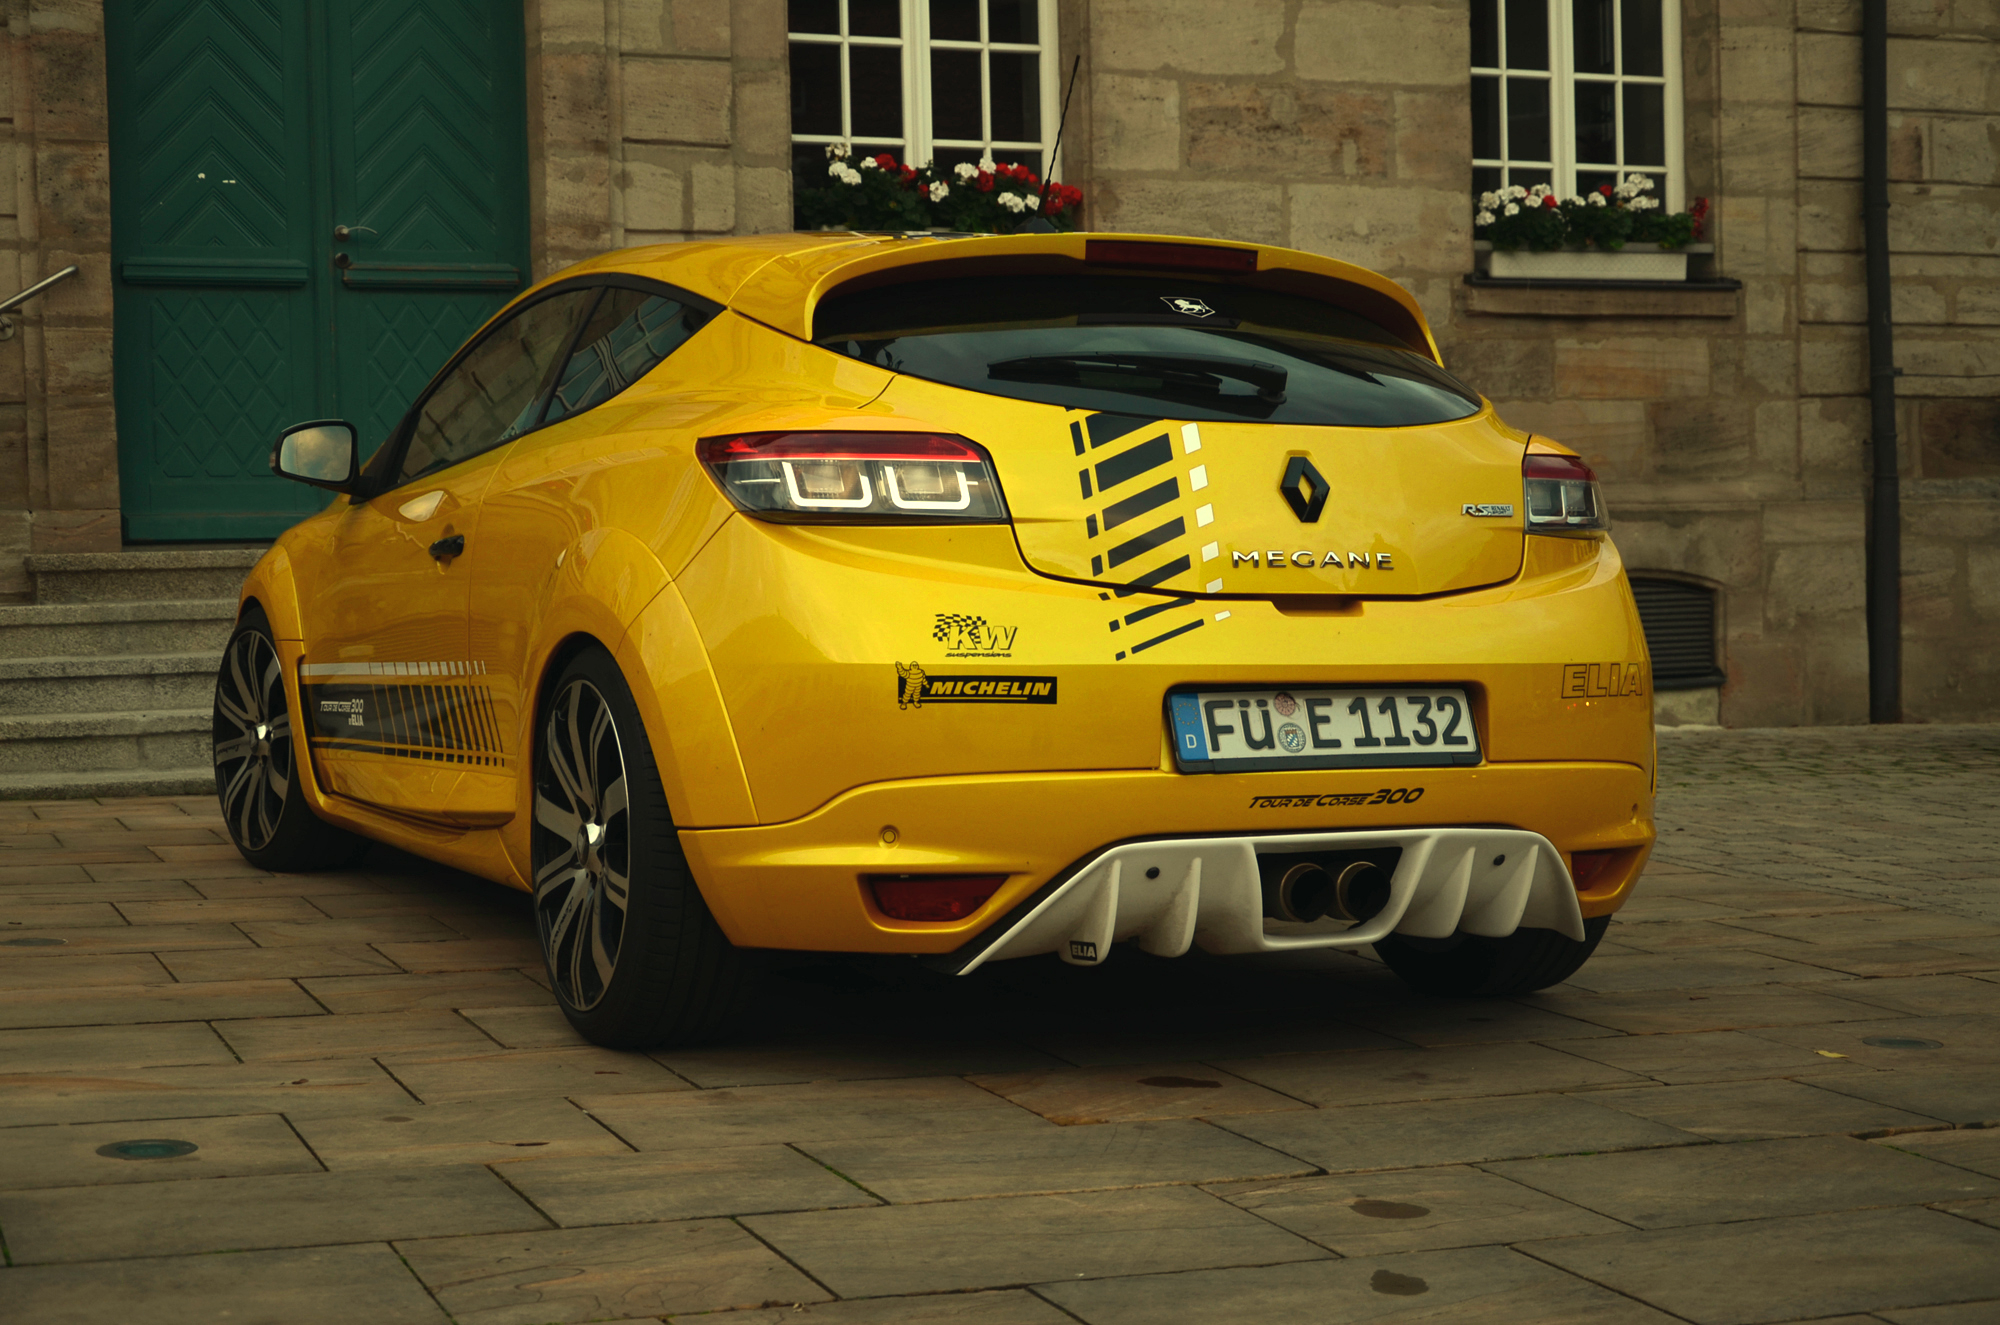 Renault tuning